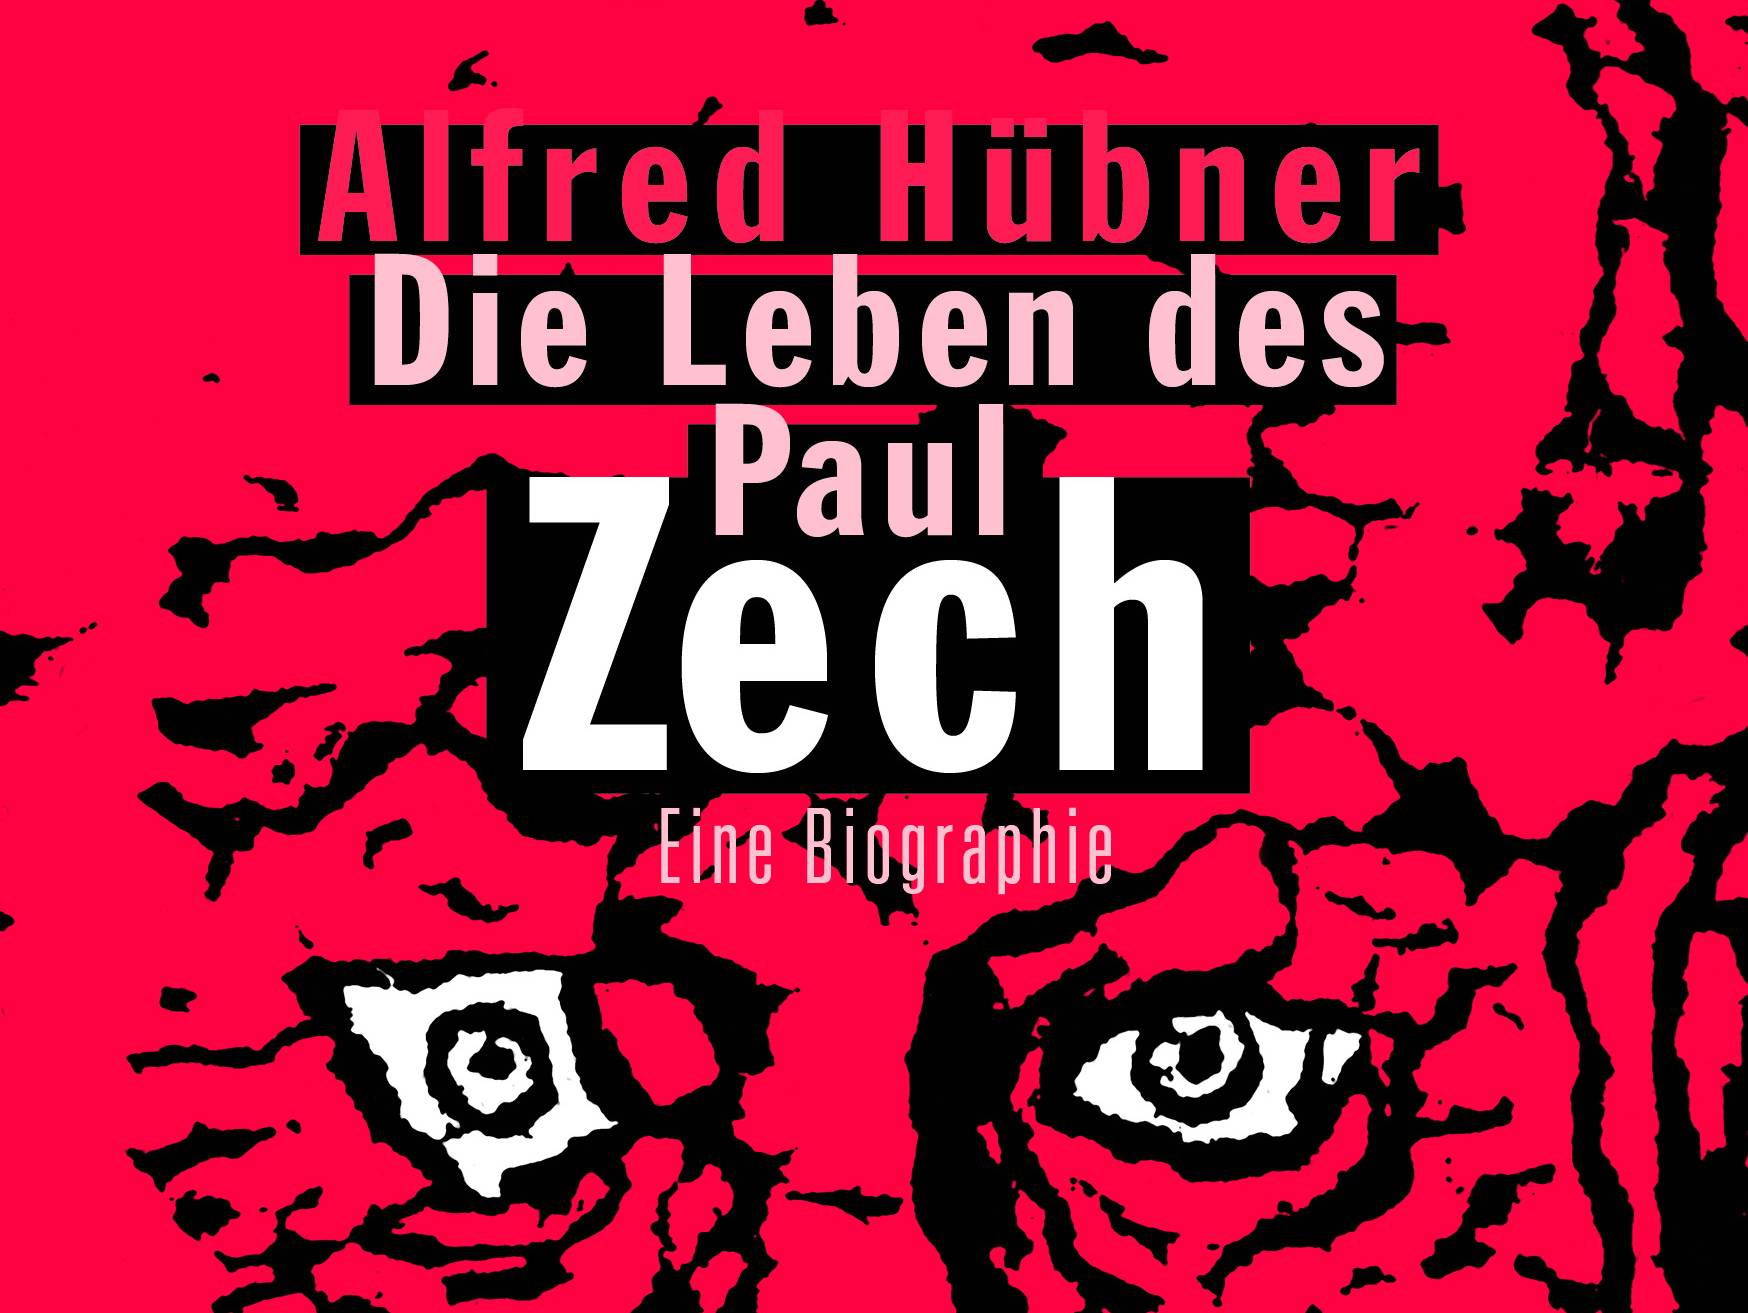  Dieses Cover übersieht man nicht so leicht: „Die Leben des Paul Zech“ von Alfred Hübner ist im Morio-Verlag erschienen und kostet 48 Euro. 